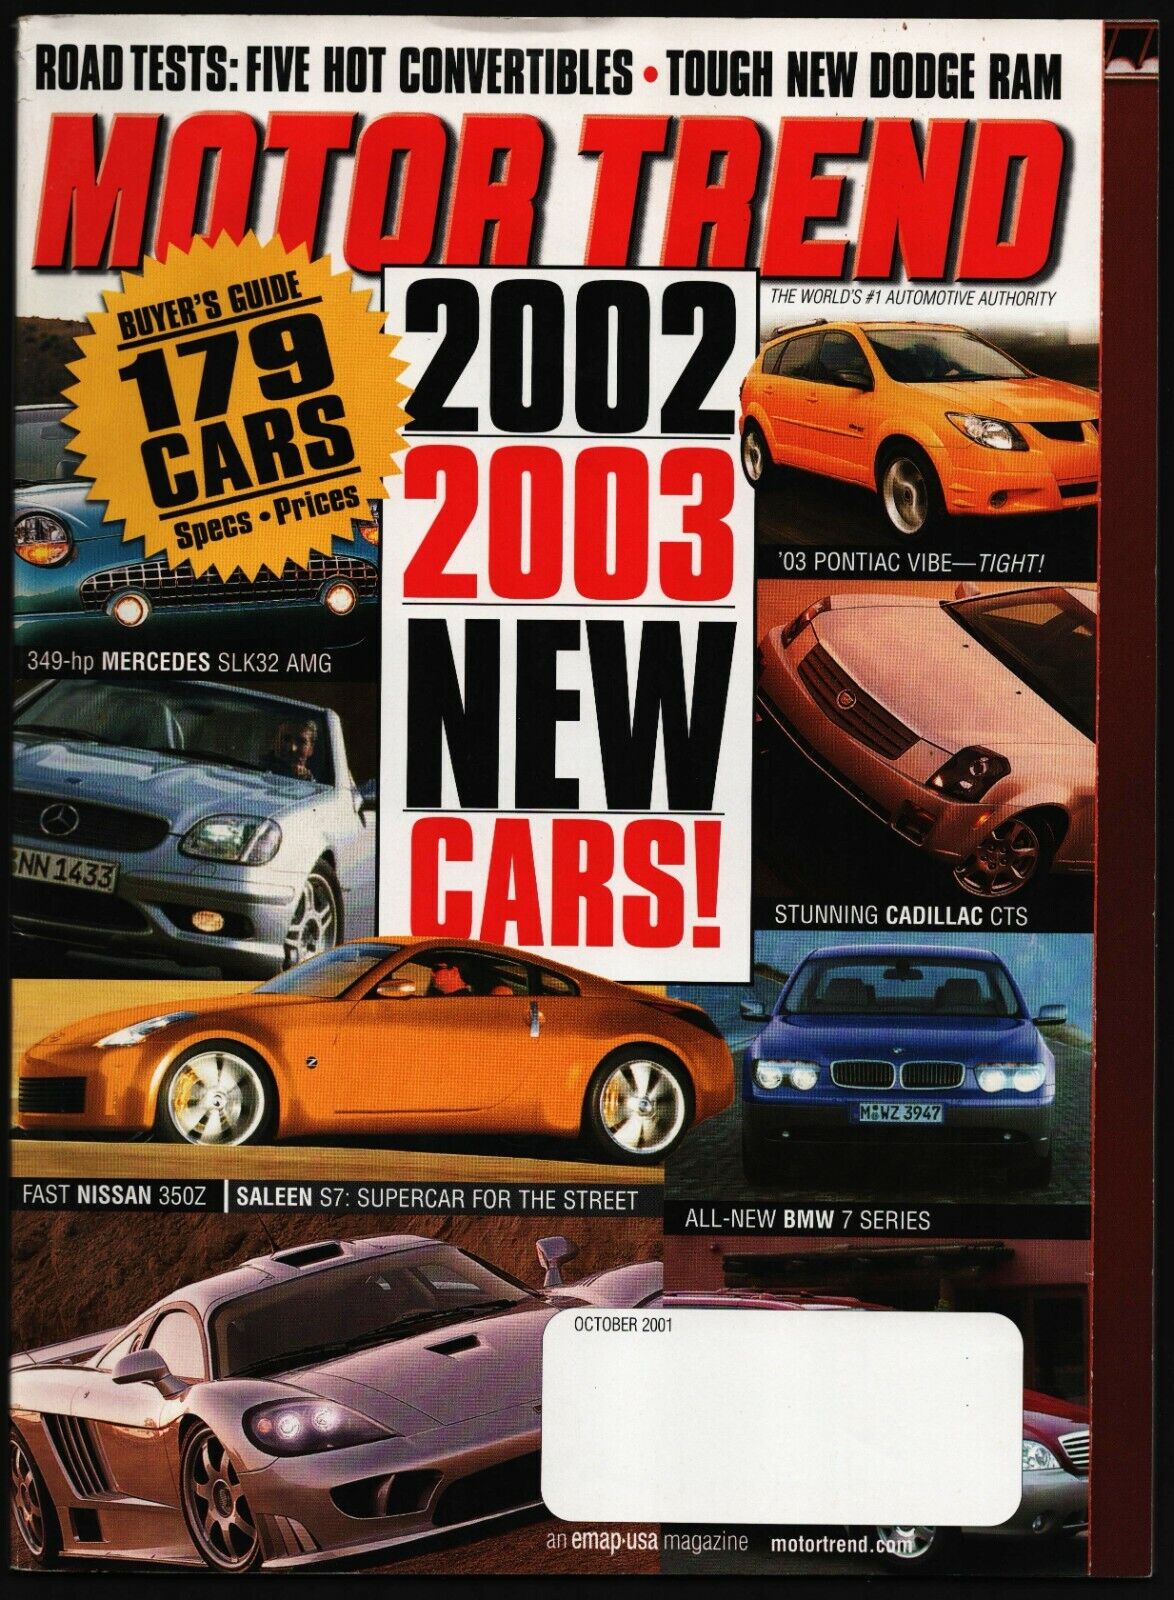 OCTOBER 2001 MOTOR TREND MAGAZINE NEW CARS, MERCEDES SLK32 AMG, SALEEN S7